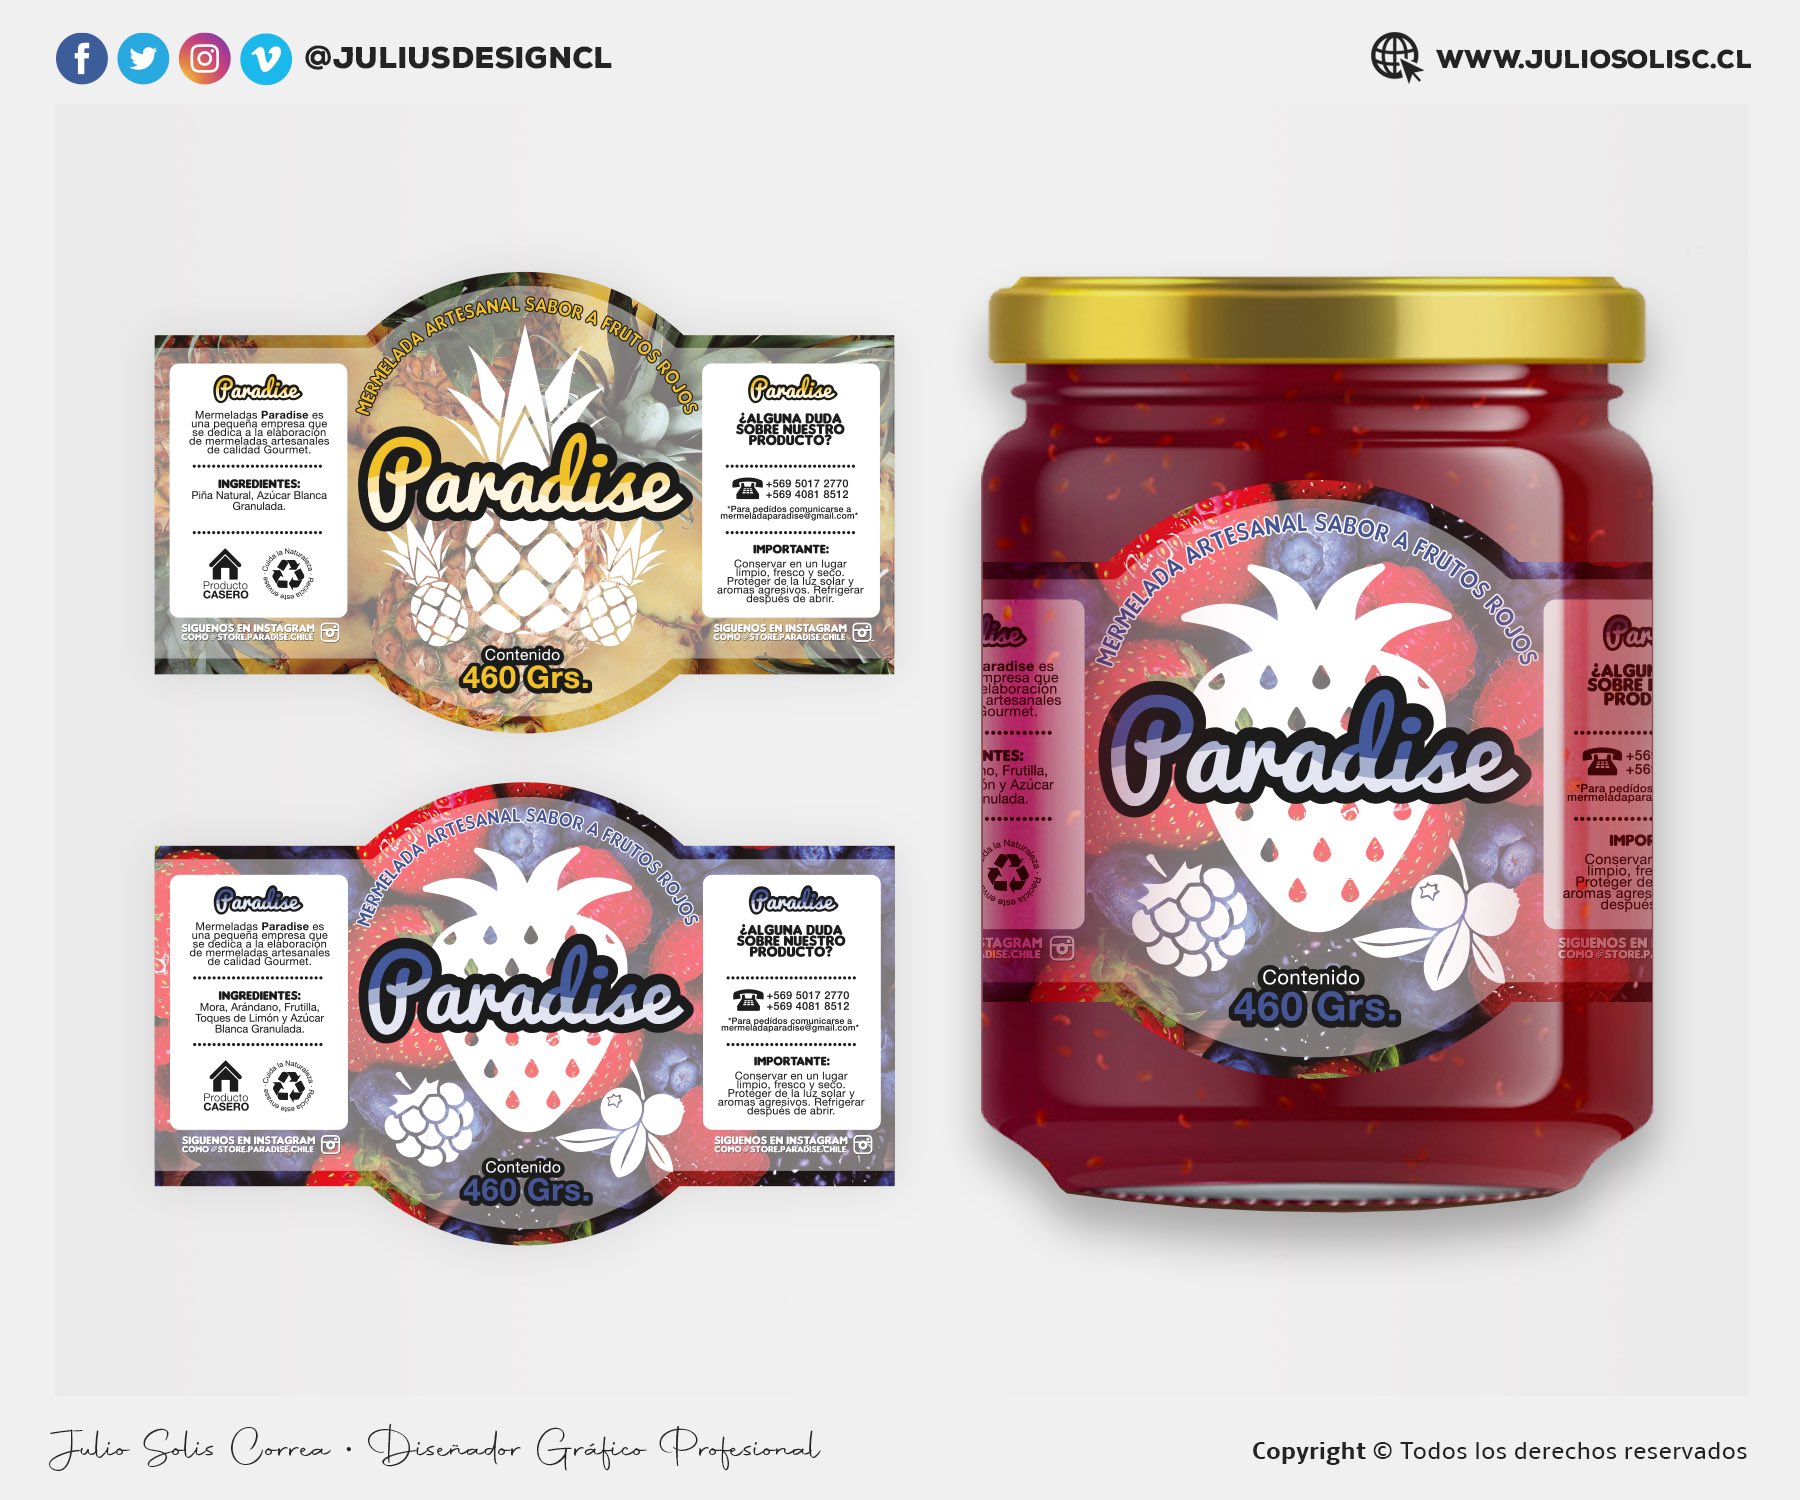 Julio Cesar Solis Twitter: "Etiquetas de mermeladas 😊 productos caseros! Si tienes una idea en mente escríbeme 😊 así daré vida a tus ideas! #etiquetas #etiquetaspersonalizadas #mermelada #mermeladacasera #pyme #emprende #emprendimiento #